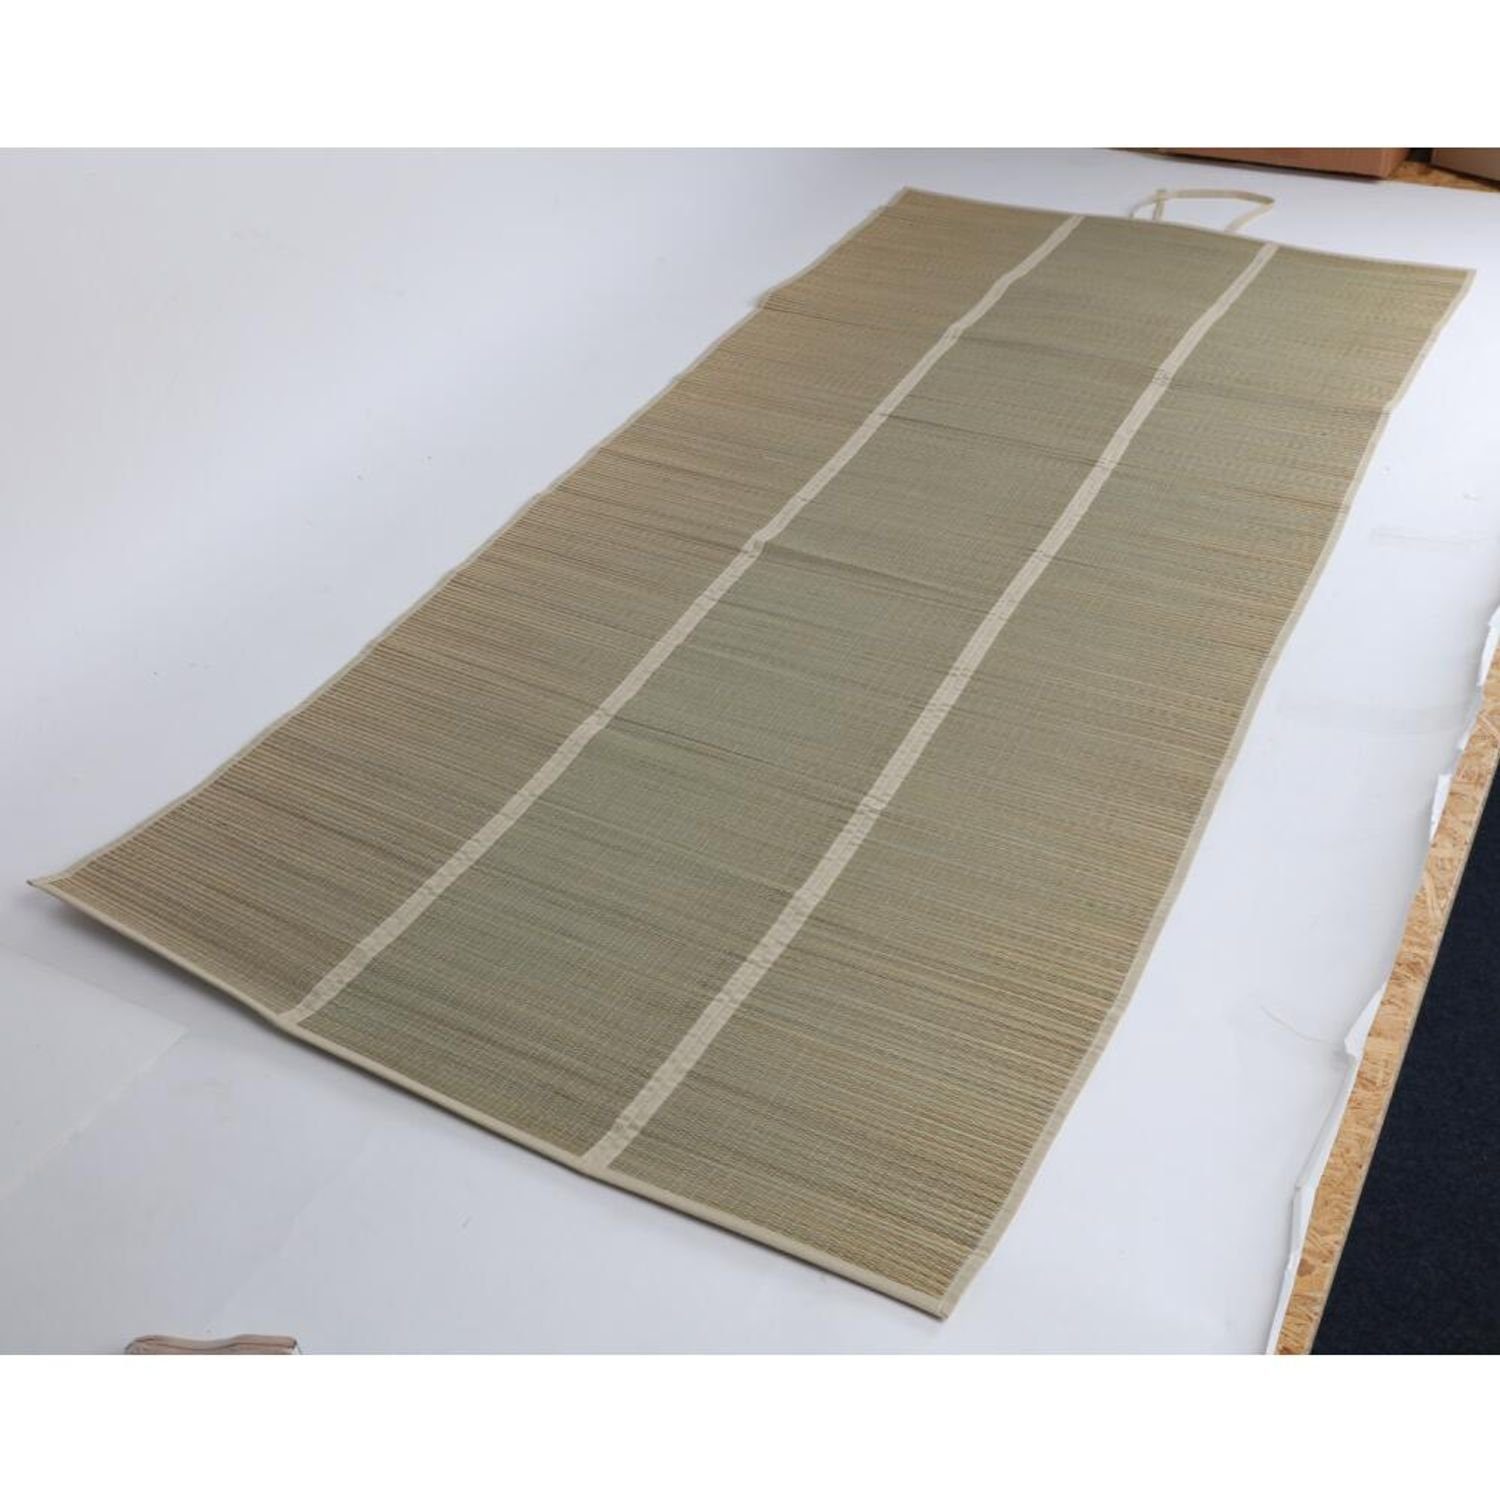 BURI Yogamatte 12x Strandmatte Seegras Decken Sonnenliege Unterlage Tuch 90x190cm